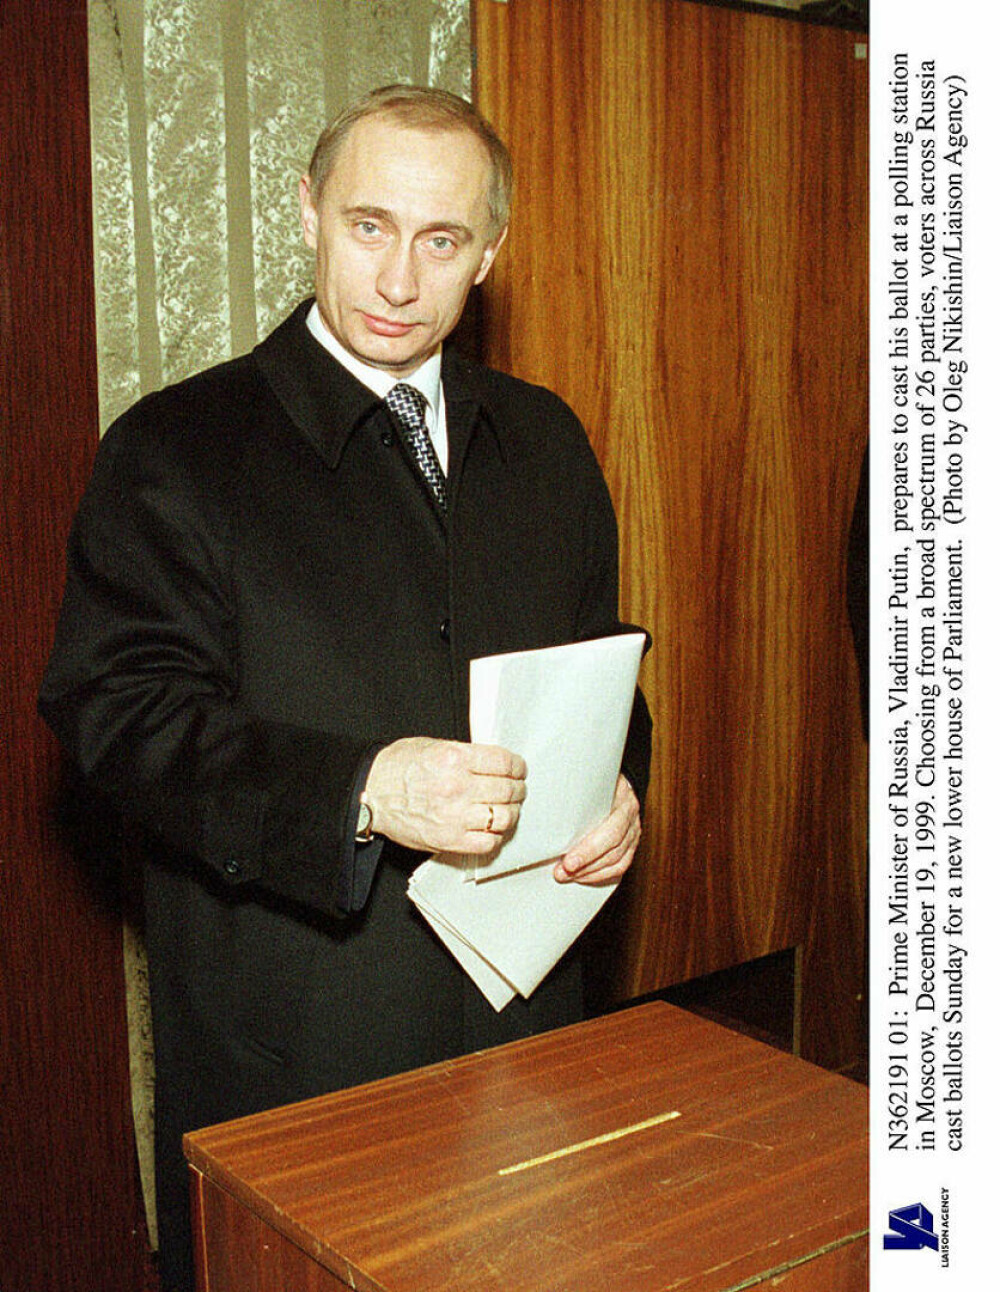 Vladimir Putin împlinește 70 de ani. Viața celui mai controversat lider al lumii de azi - Imaginea 14